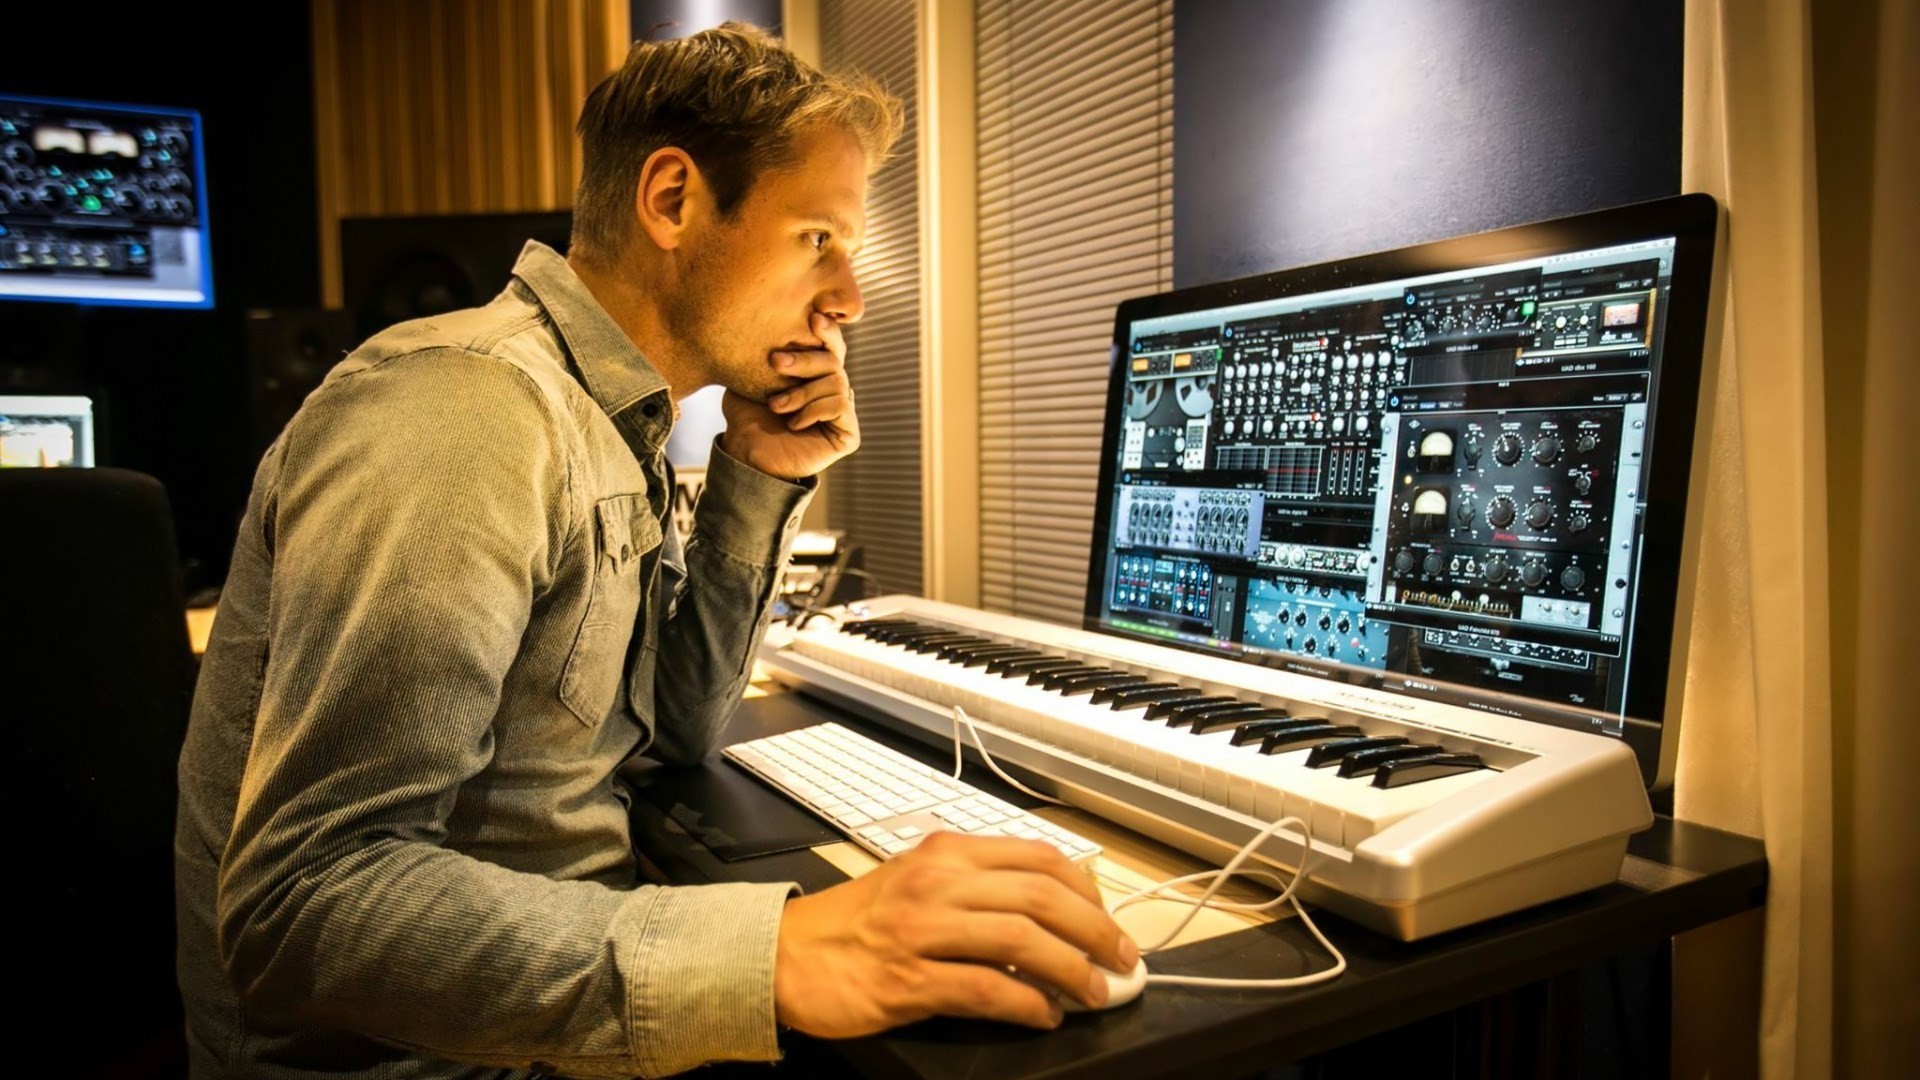 Музыкант сочинивший песню. Студия Армина Ван Бюрена. Armin van Buuren в студии. Армин музыкант. Студия композитора.